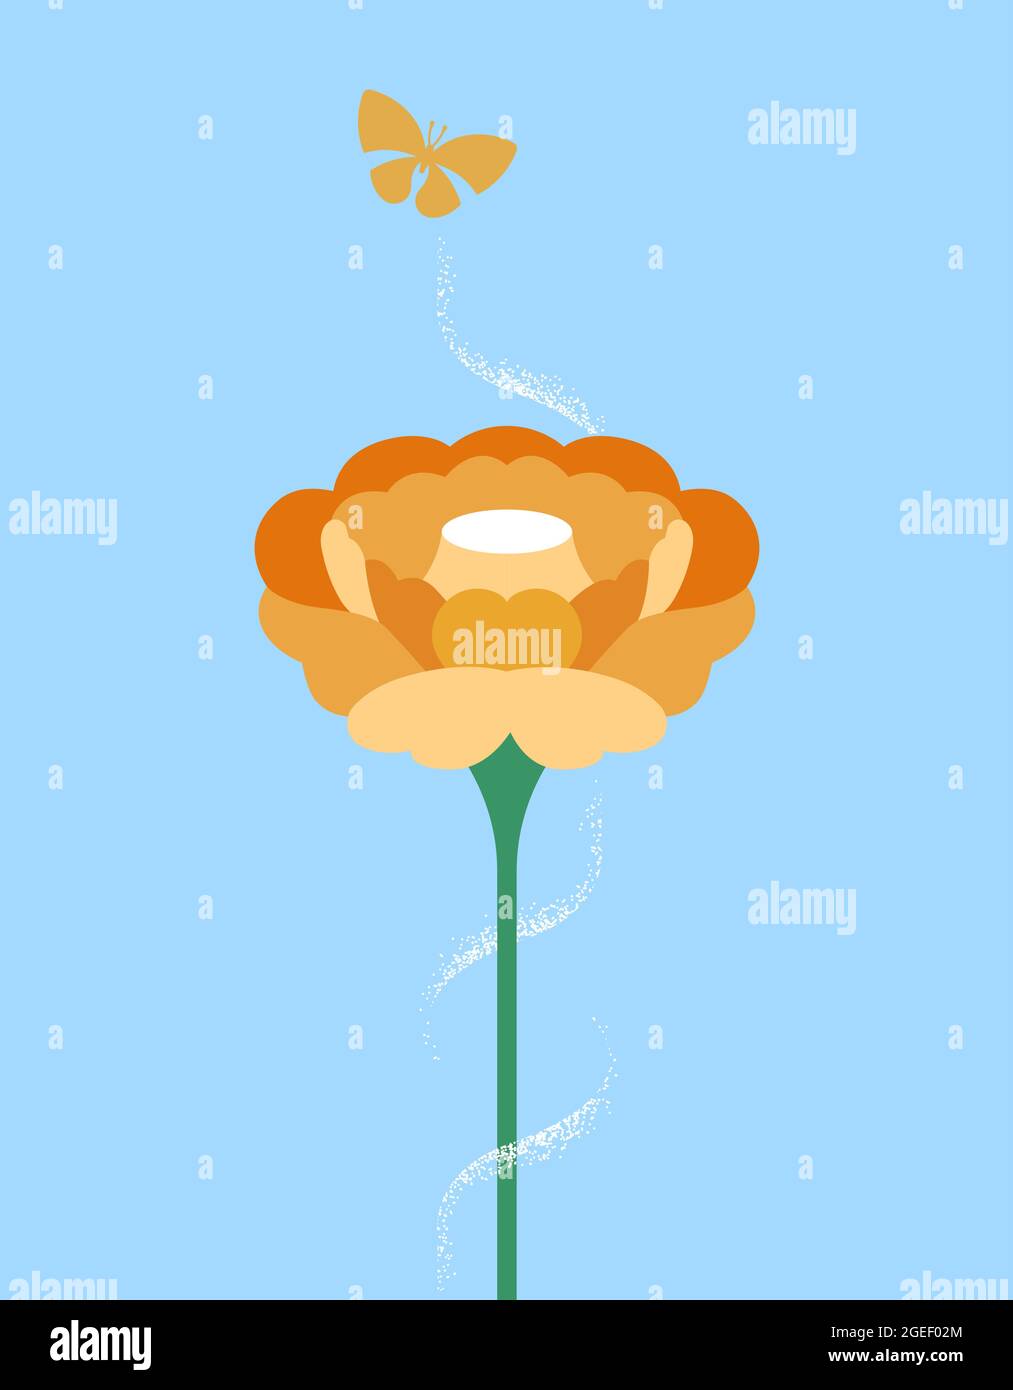 Naturszene Illustration, große offene Frühlingsblume und Schmetterling fliegen auf blauem Himmel Hintergrund. Modernes flaches Cartoon-Design für die Umwelt oder saisonal Stock Vektor